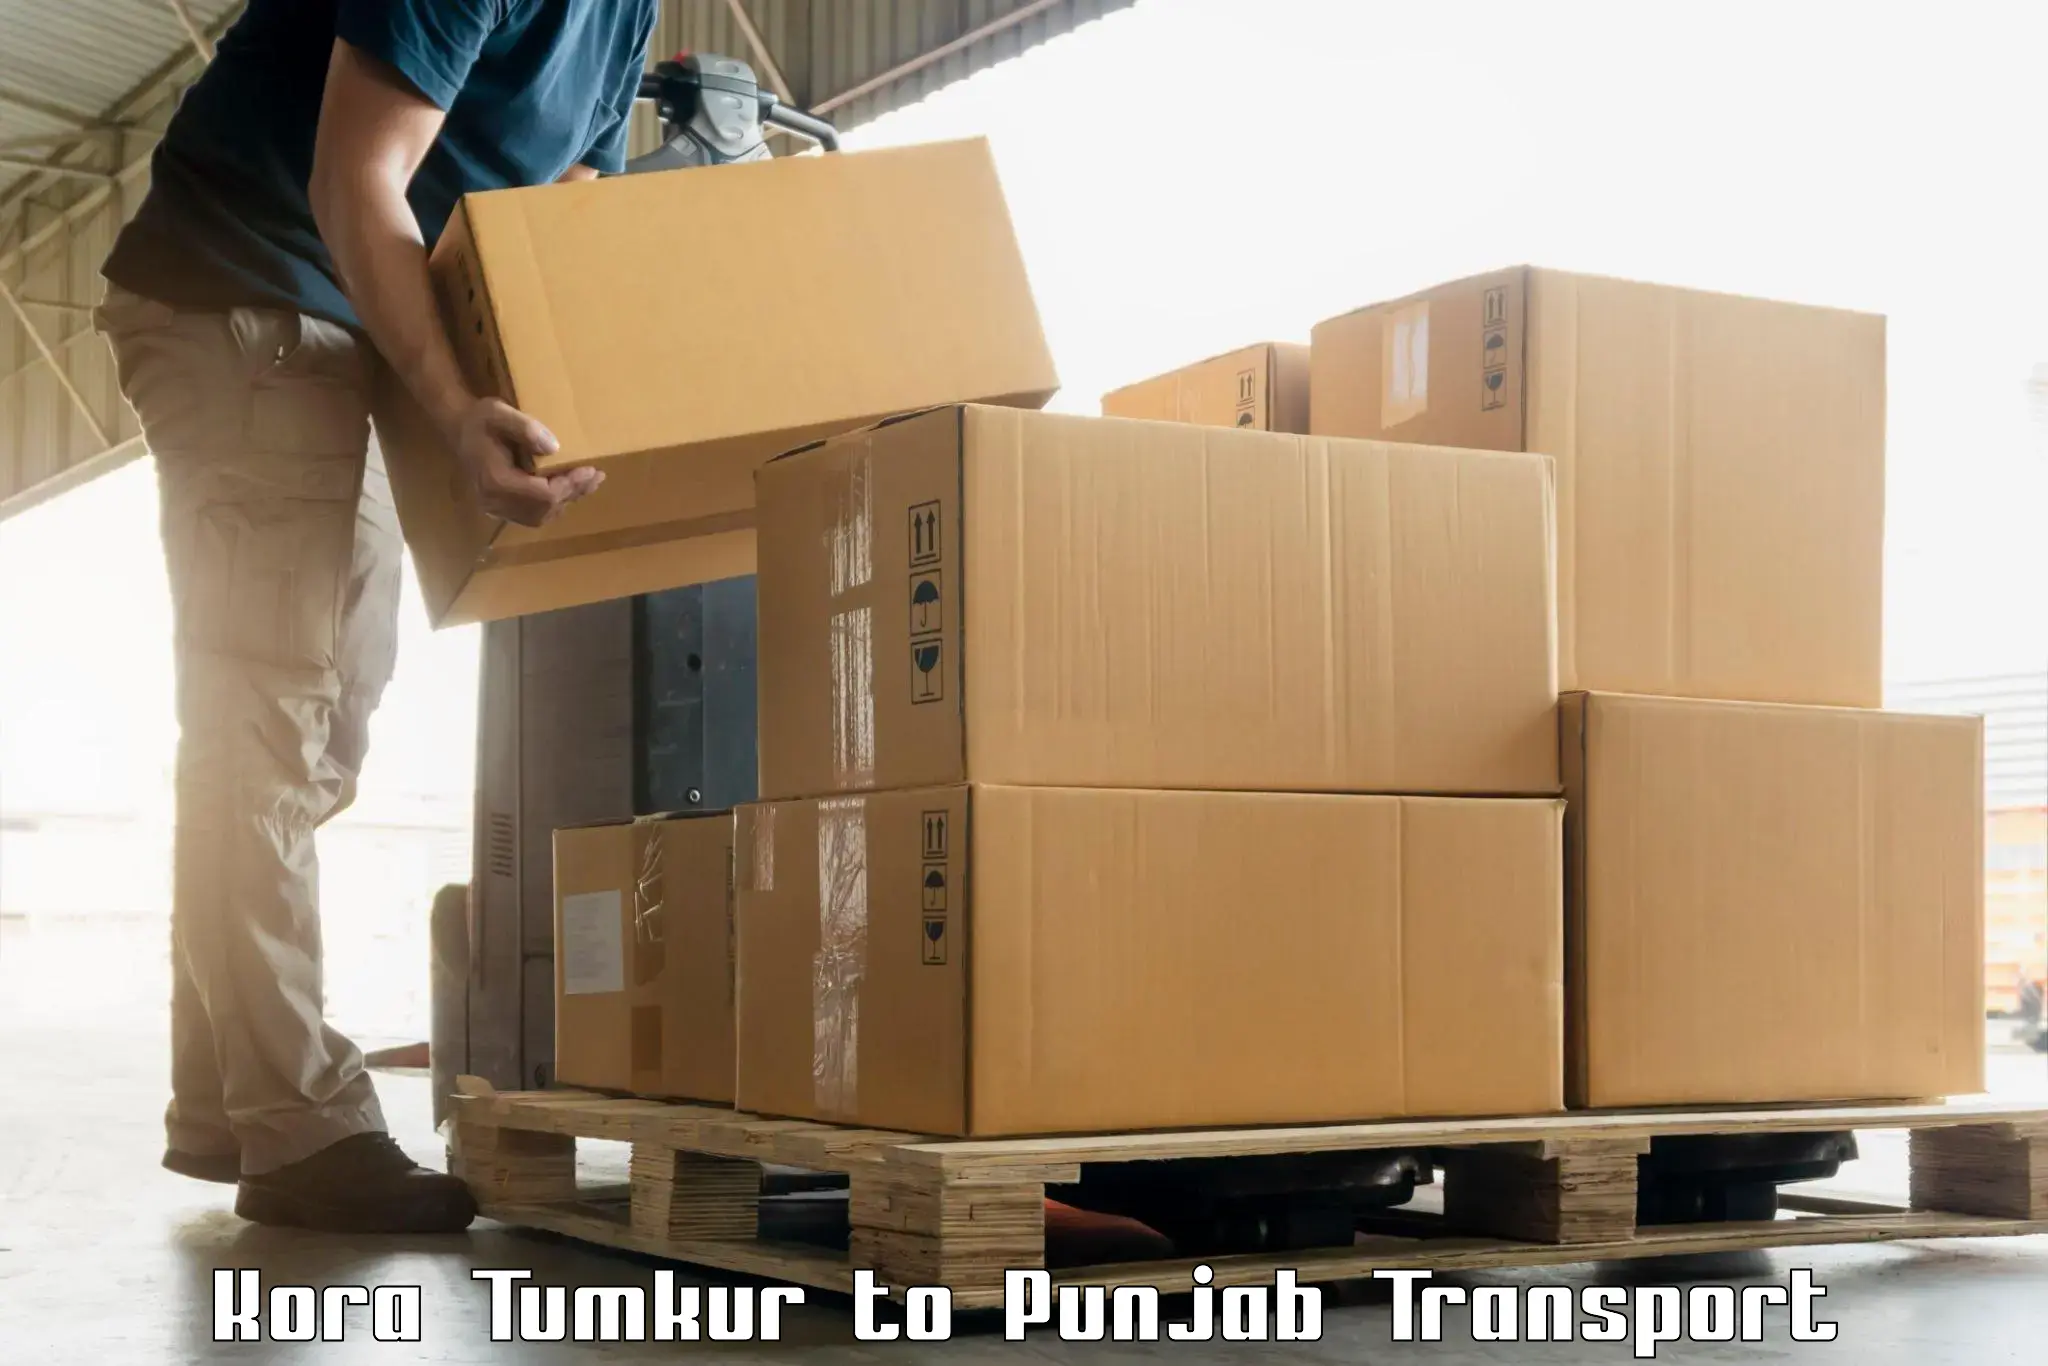 Two wheeler parcel service Kora Tumkur to Punjab